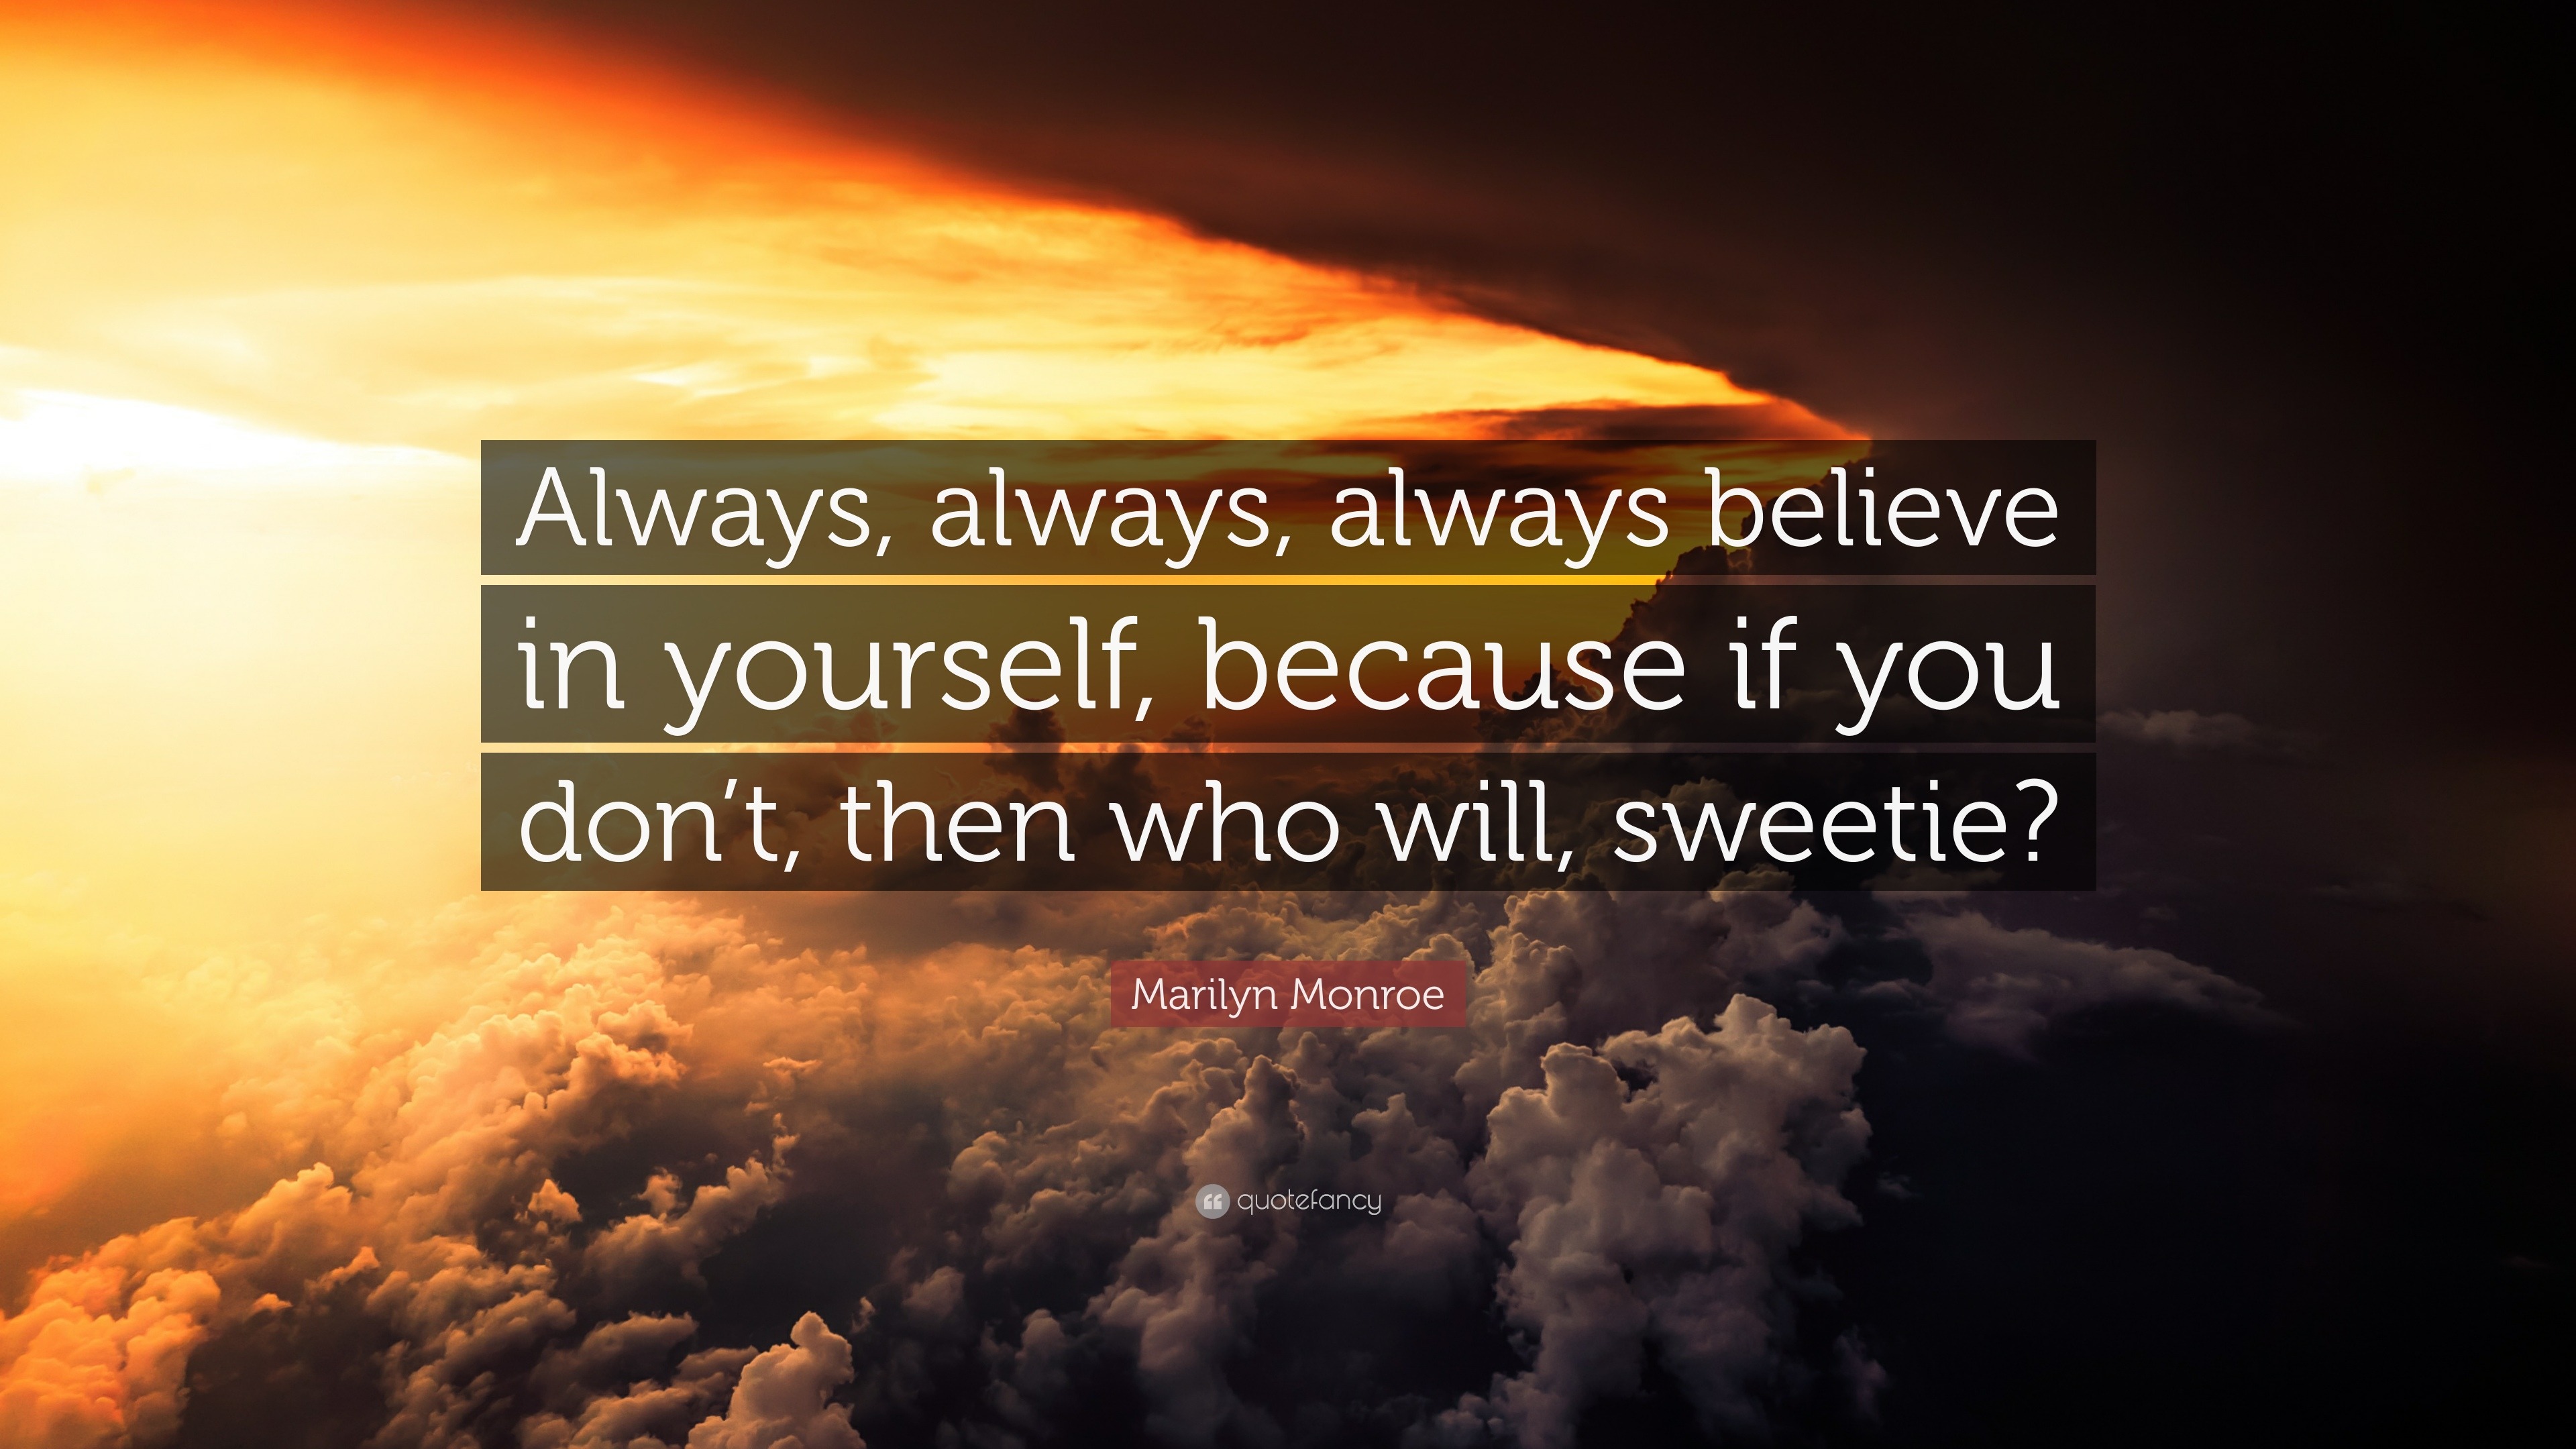 Marilyn Monroe Quote: “Always, always, always believe in yourself ...